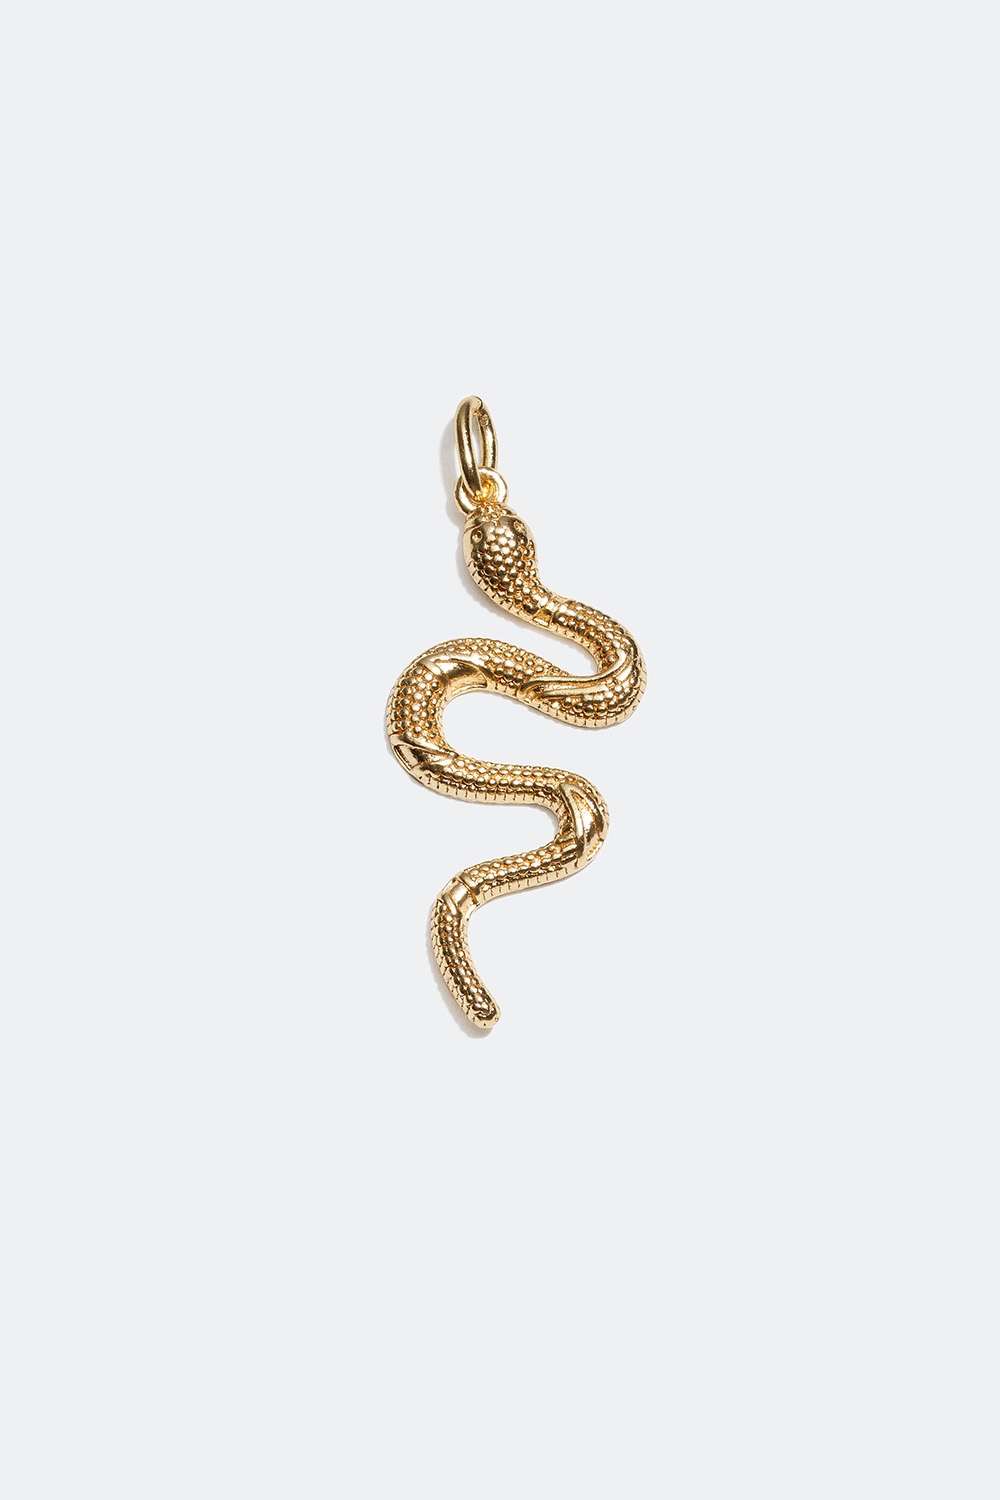 Berlock med orm förgylld med 18k guld i gruppen Rea / Smycken hos Glitter (509000162000)